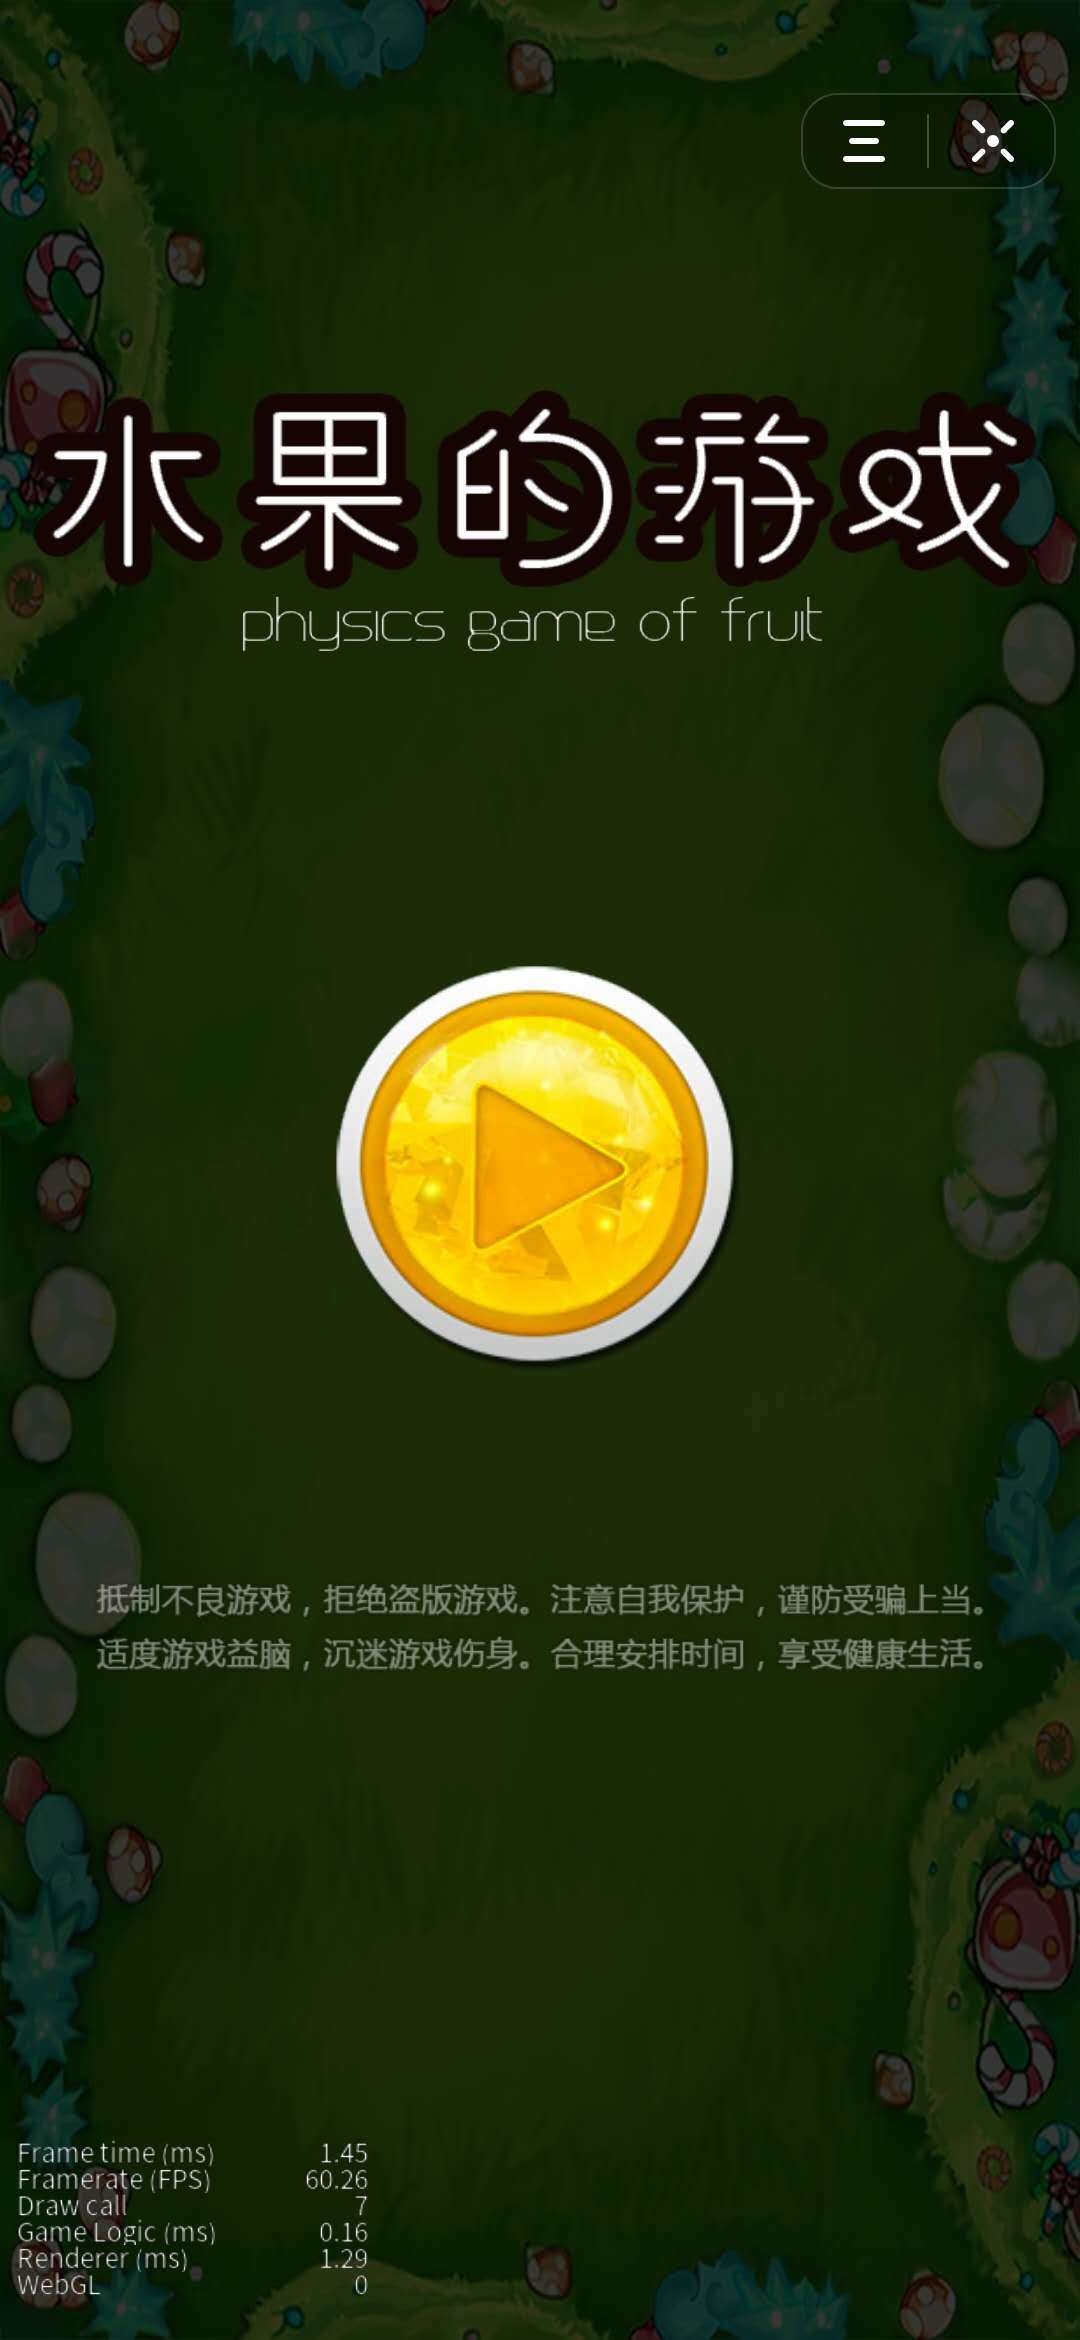 Screenshot 1 of trò chơi trái cây 2.0